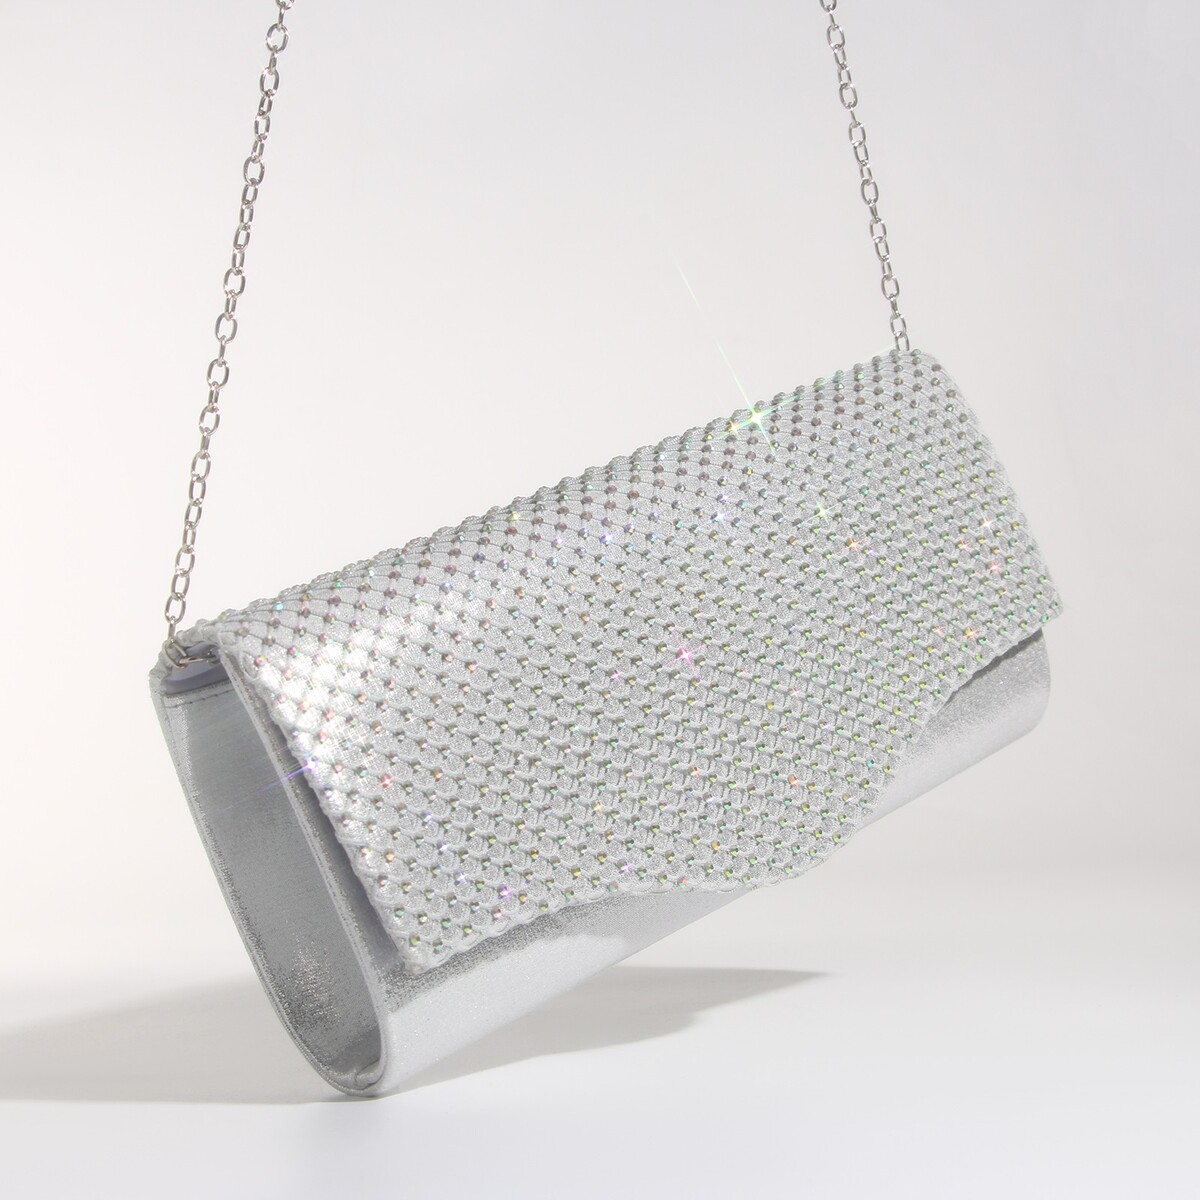 Сумка-клатч на магните, цвет серебряный сумка клатч на магните серебряный